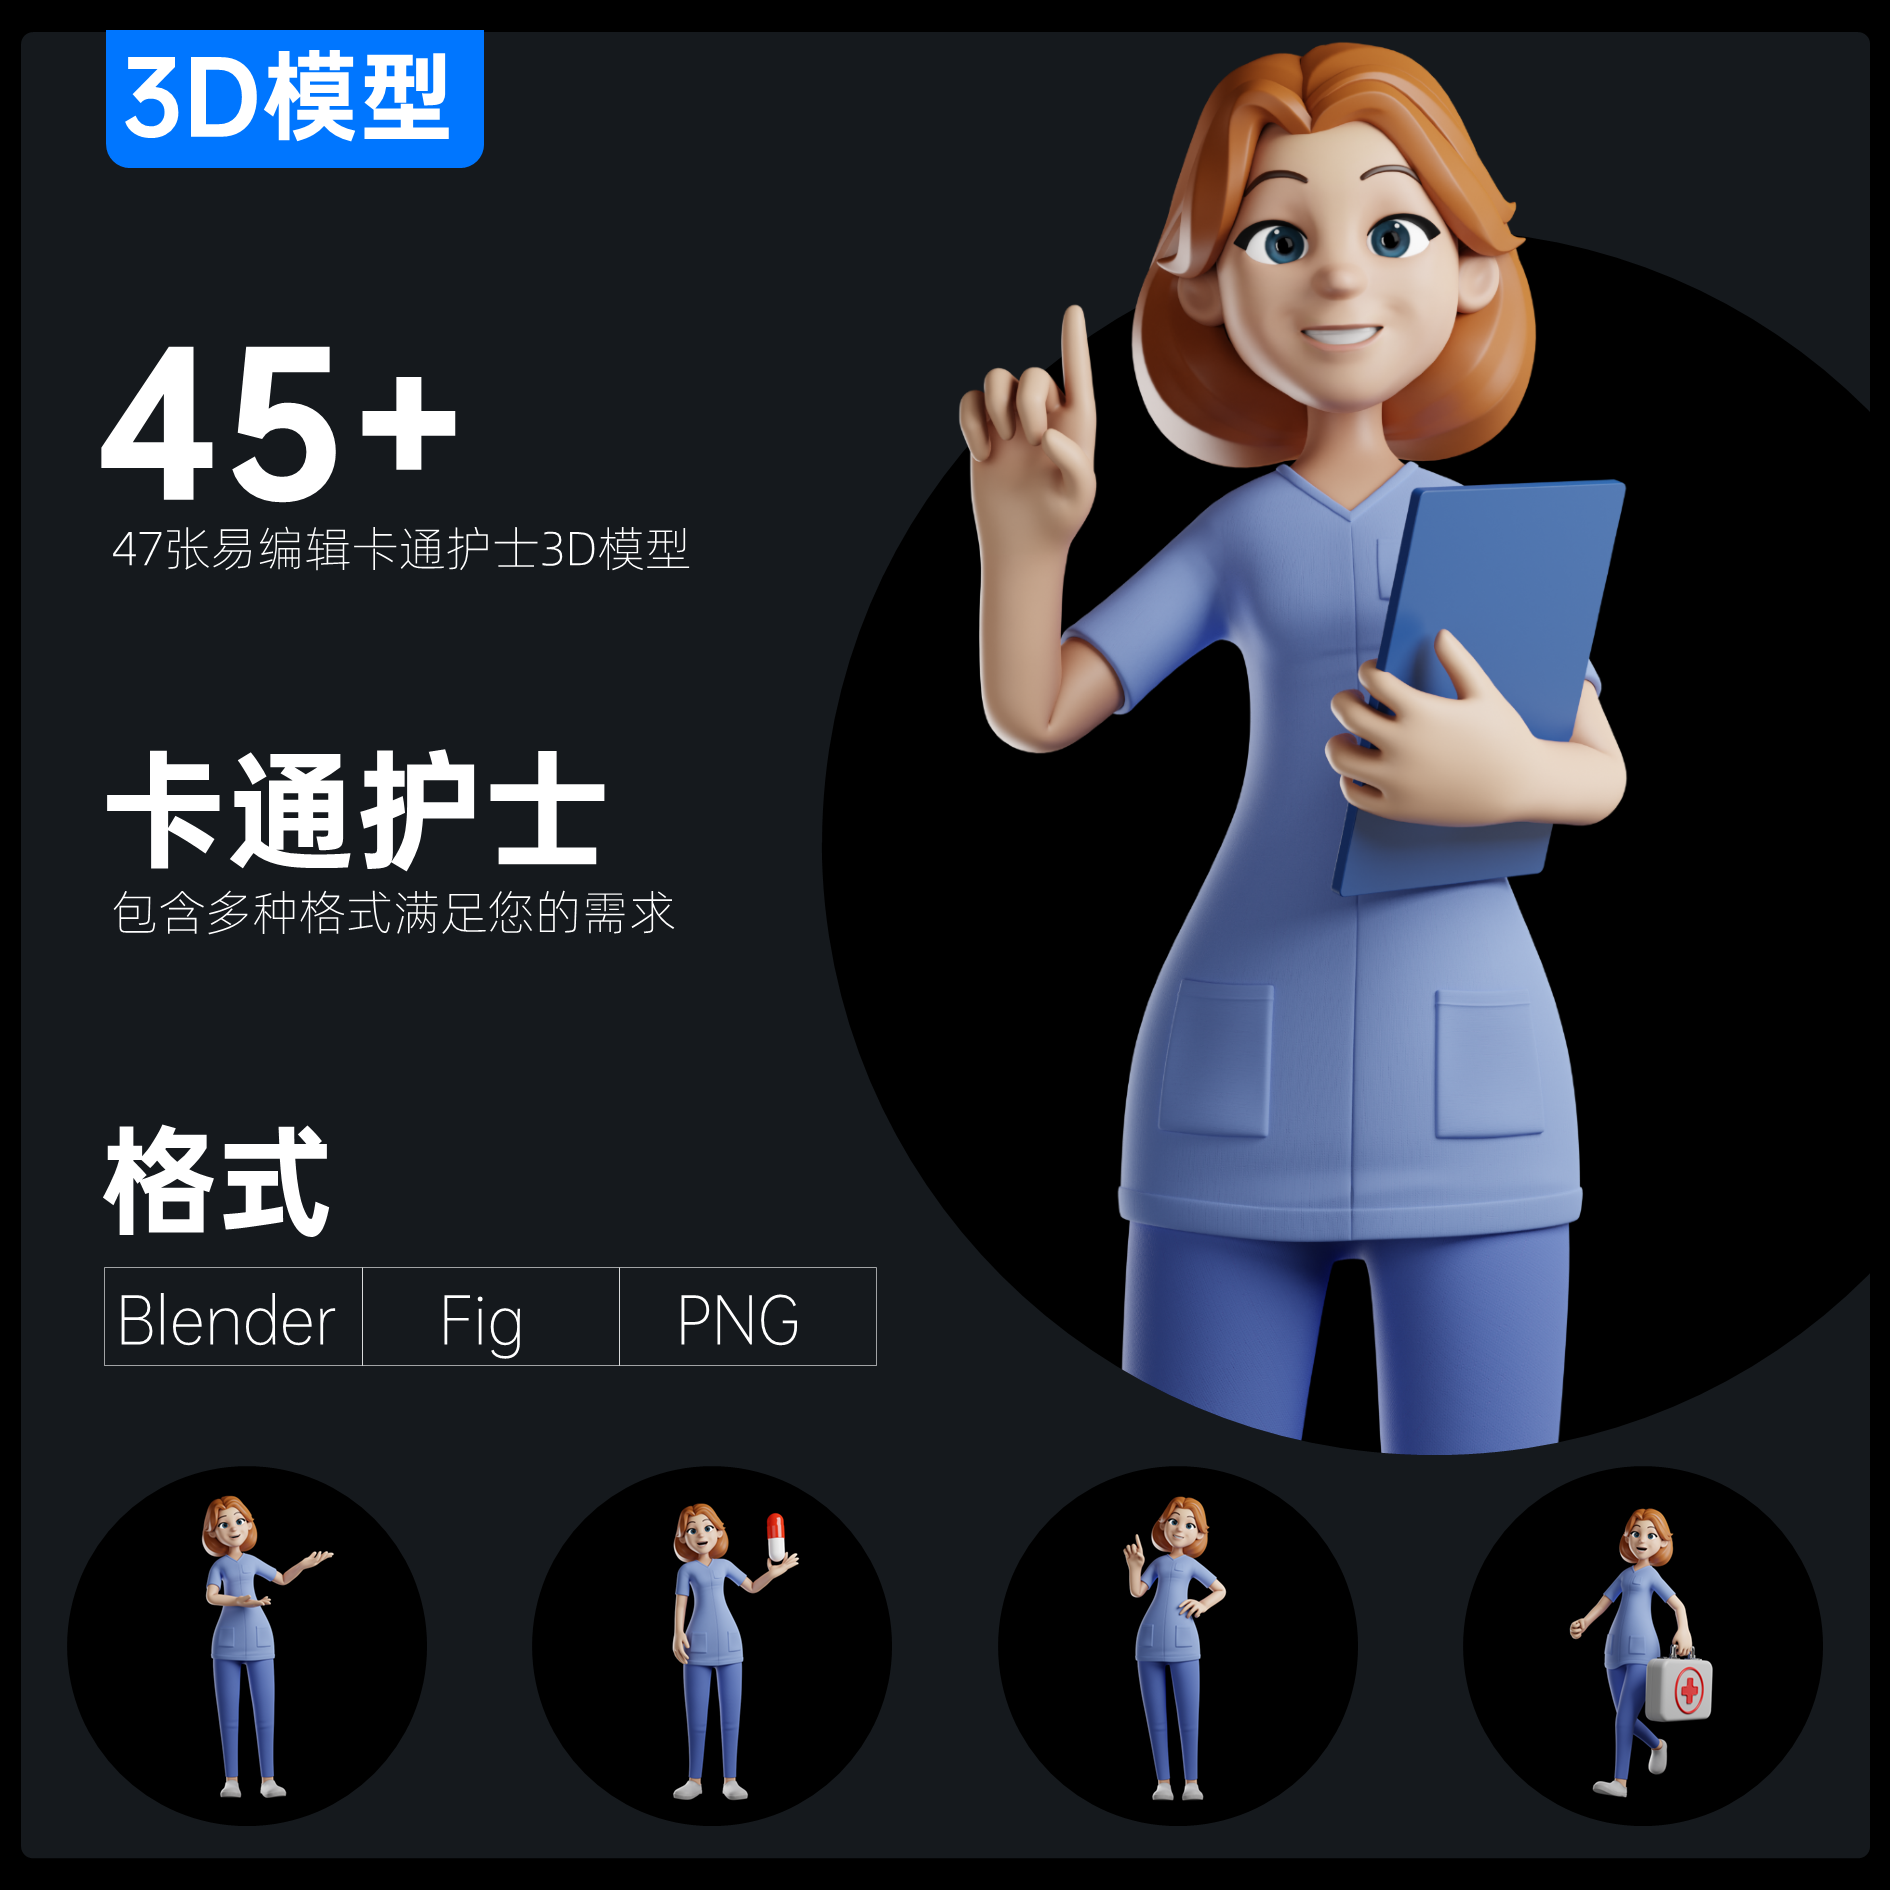 45+卡通医疗护士3D模型医学介绍疫情防控素材Blender\Fig\Png格式